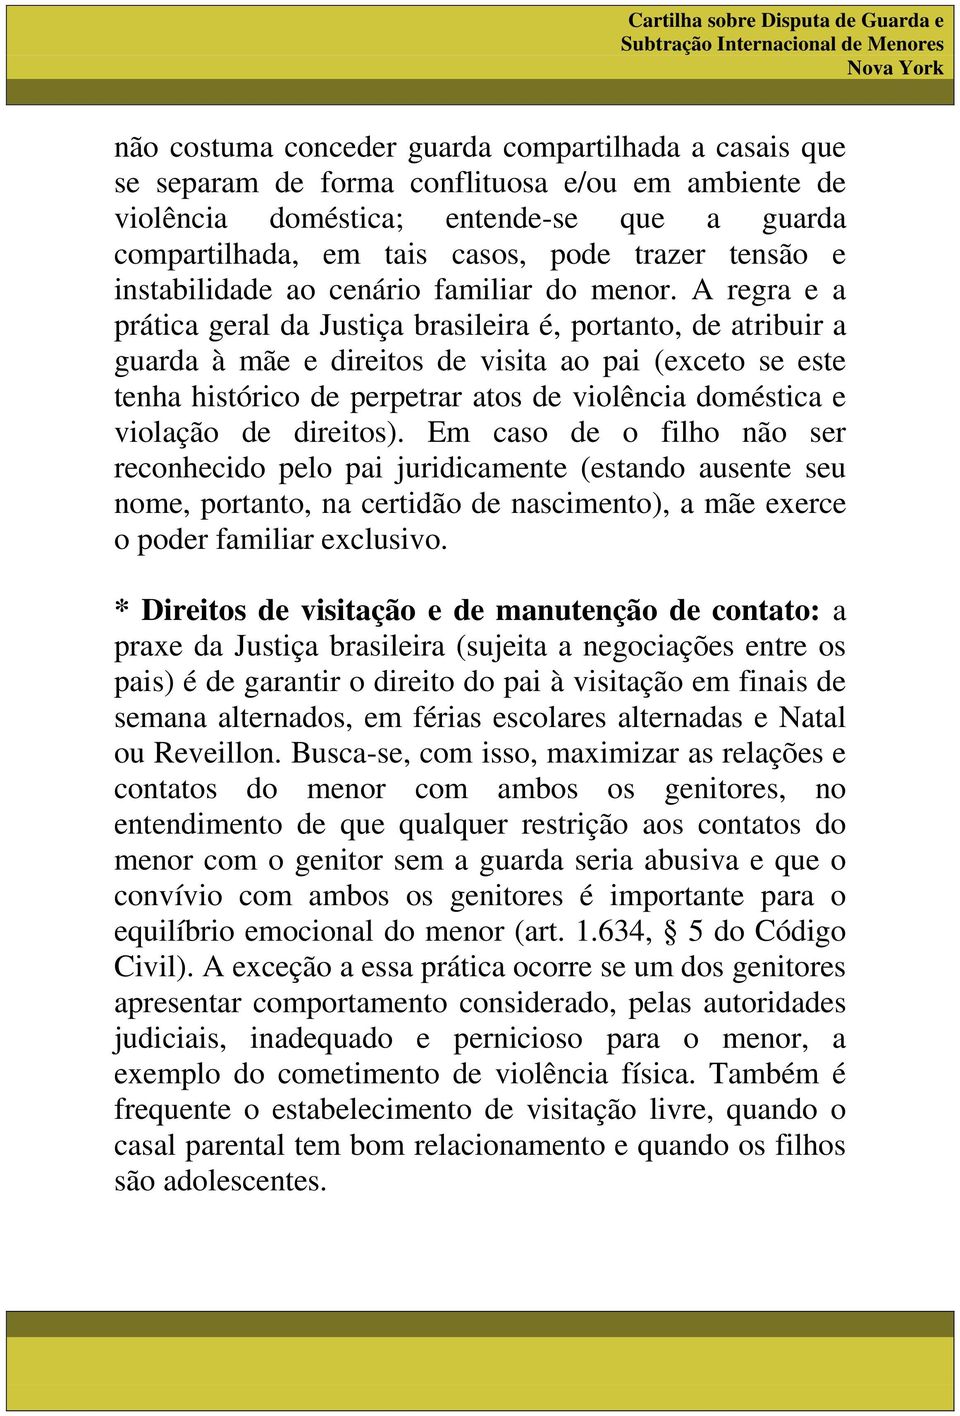 A regra e a prática geral da Justiça brasileira é, portanto, de atribuir a guarda à mãe e direitos de visita ao pai (exceto se este tenha histórico de perpetrar atos de violência doméstica e violação